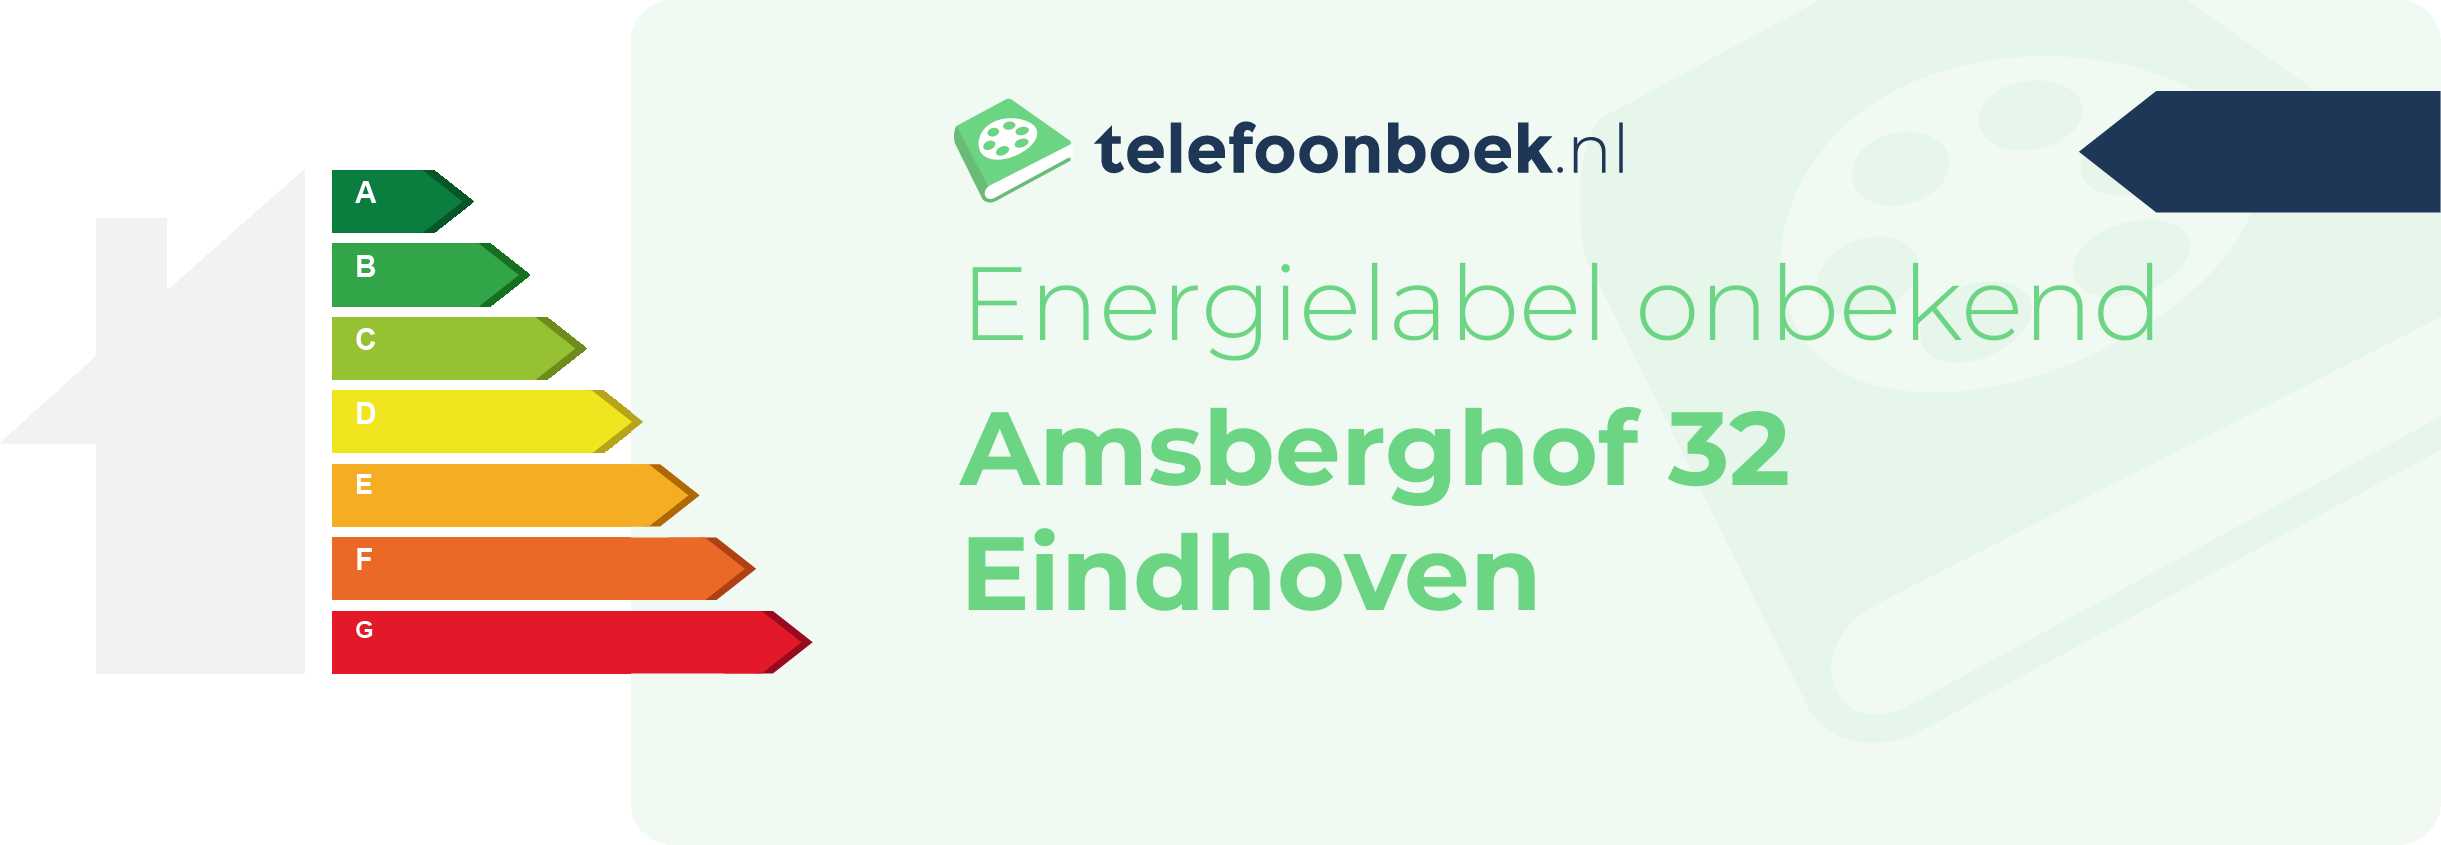 Energielabel Amsberghof 32 Eindhoven